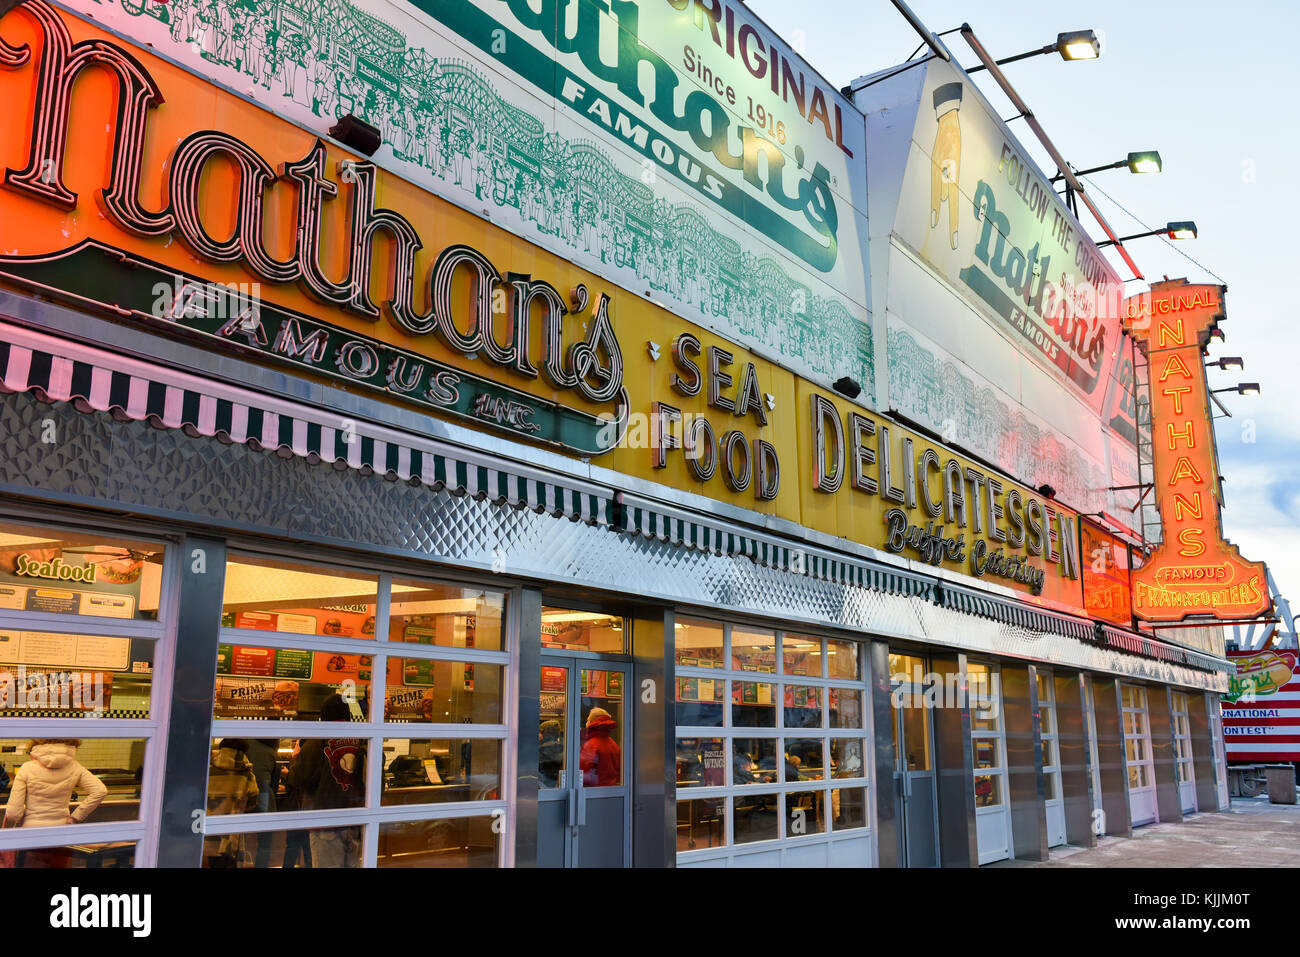 Brooklyn, New York - Januar 1, 2015: die berühmte Nathan Hotdogs ist ein historisches Wahrzeichen und Tradition auf Coney Island in Brooklyn, New York. Stockfoto